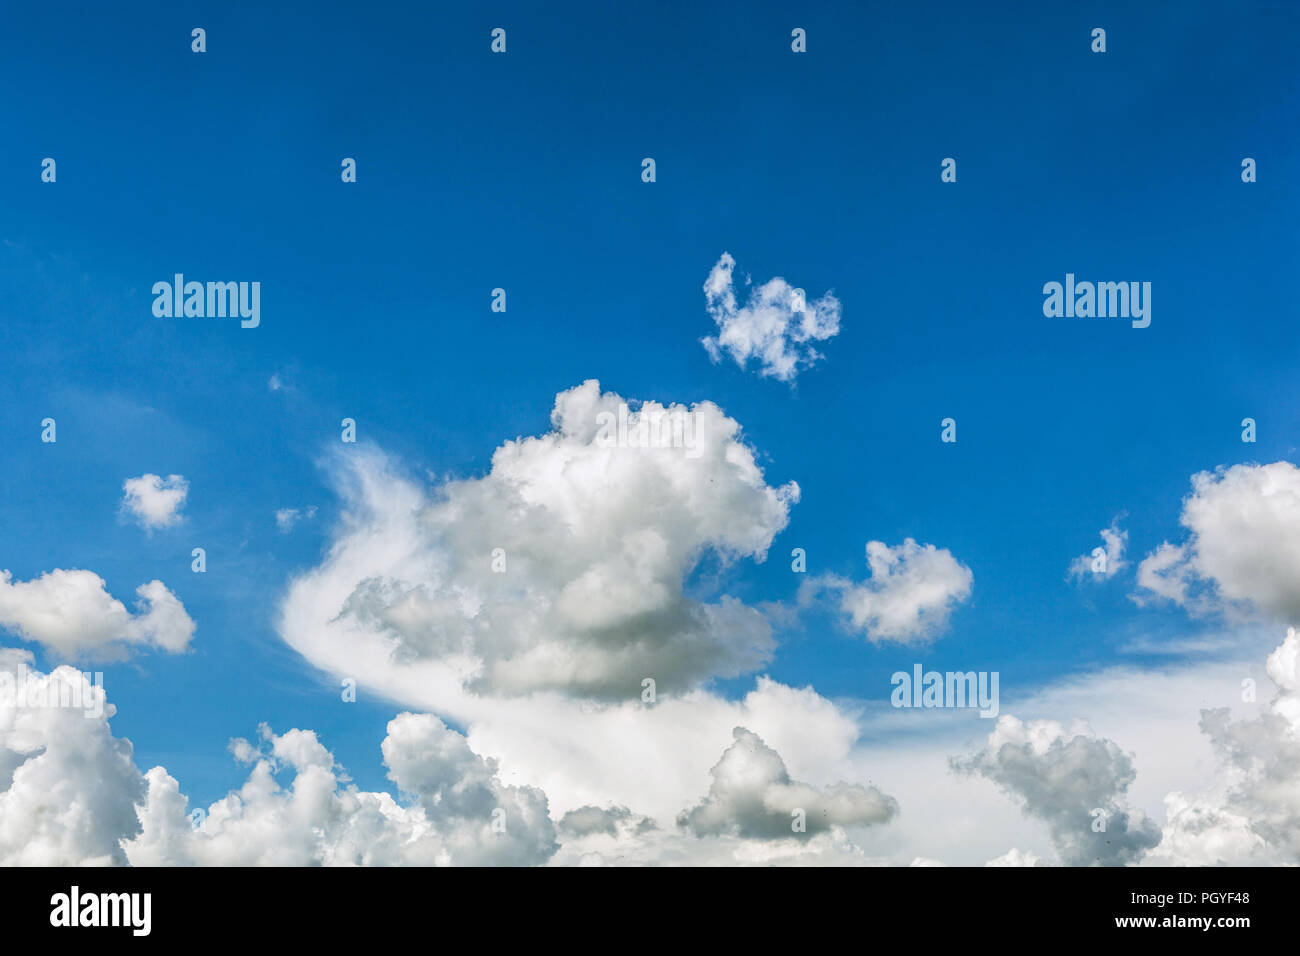 Fluffy white cumulus clouds in a blue sky Stock Photo